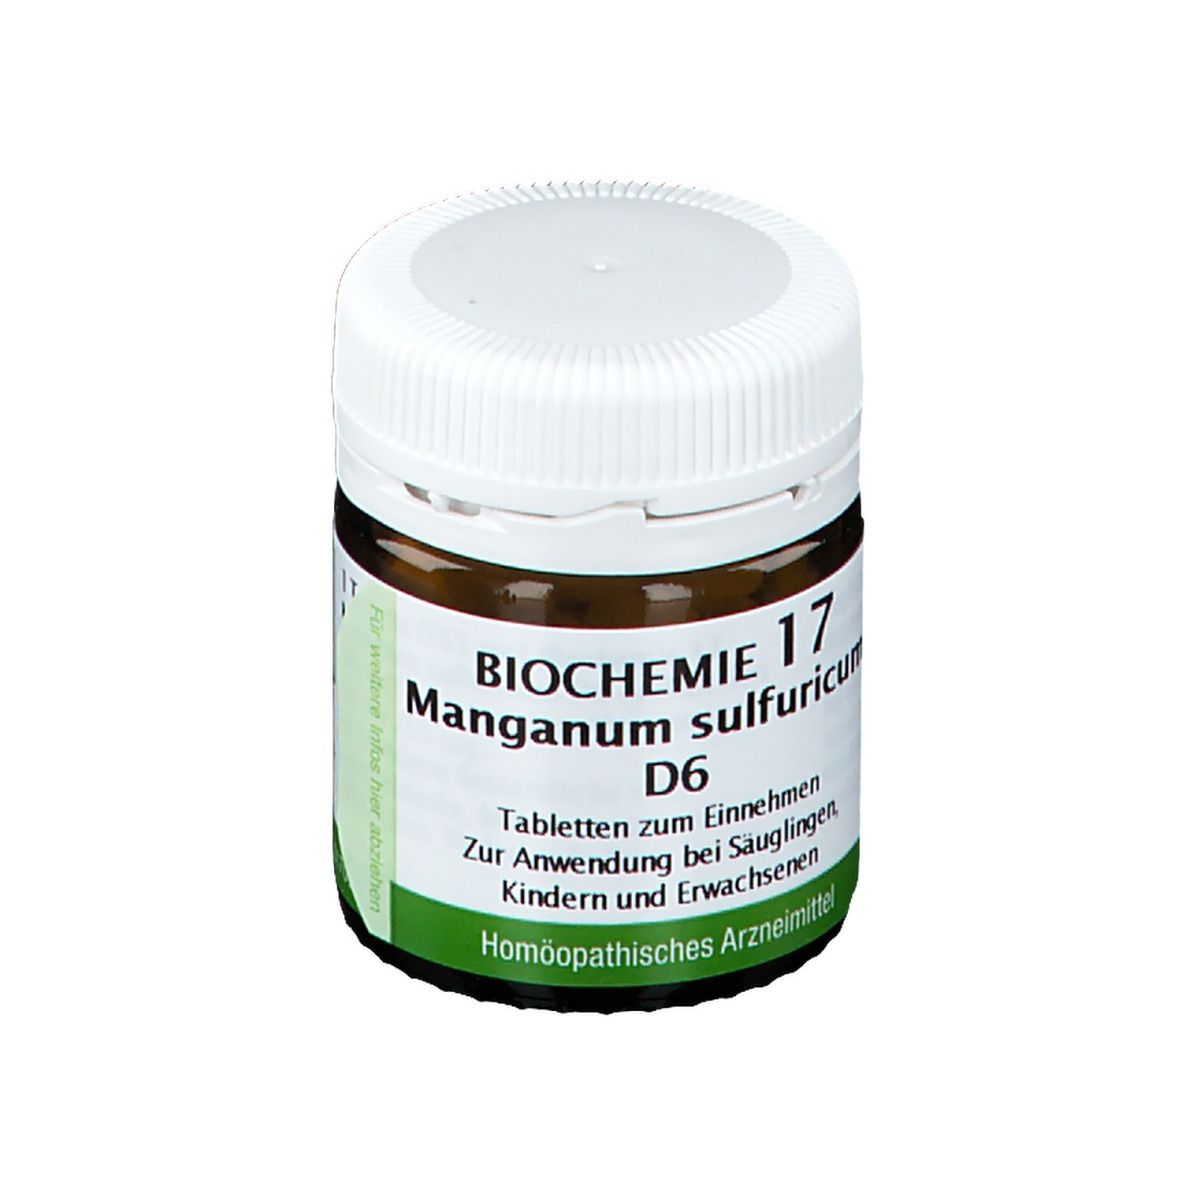 BIOCHEMIE 17 Manganum Sulfuricum D6